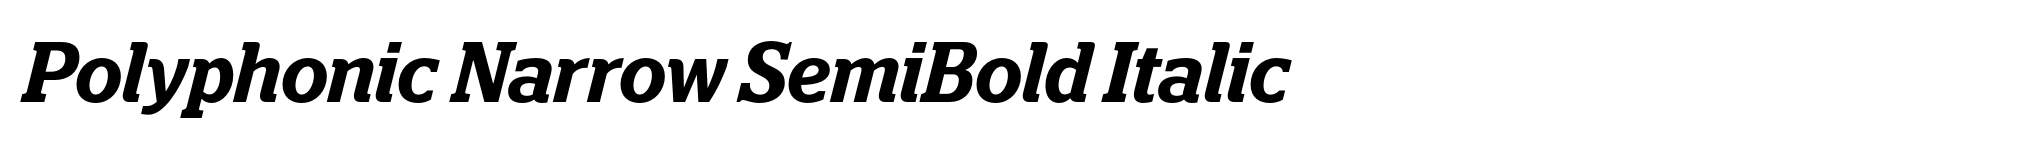 Polyphonic Narrow SemiBold Italic image